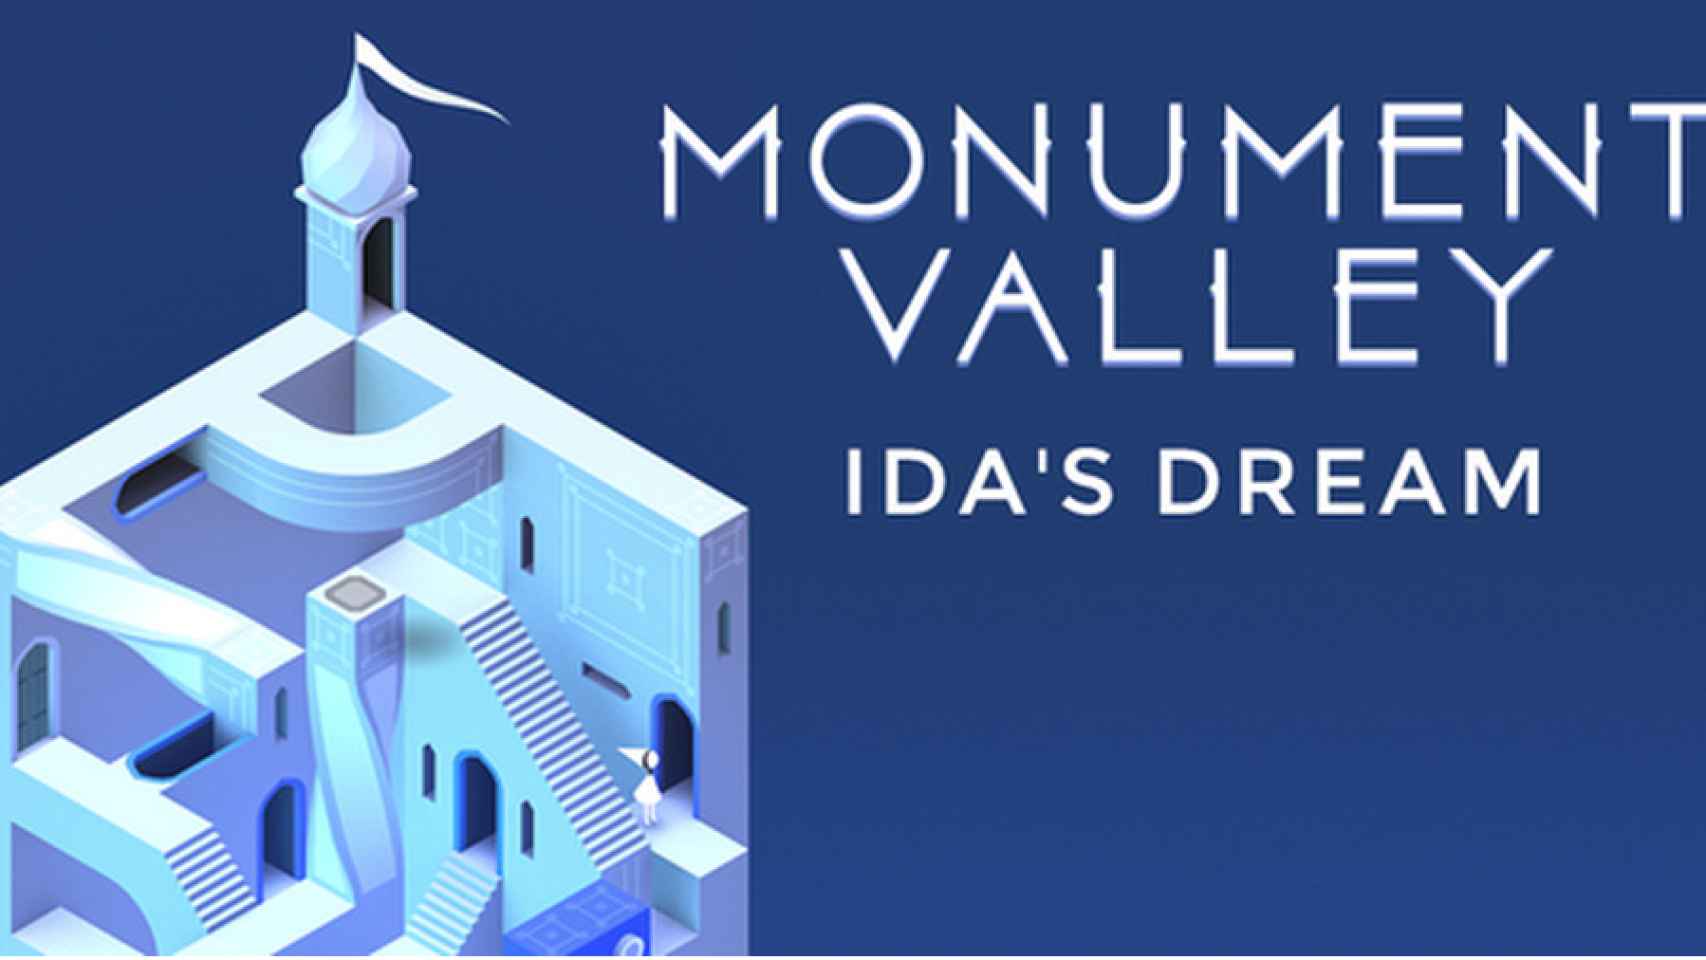 Así es Monument Valley: Ida’s Dream, el último capítulo gratuito de la saga